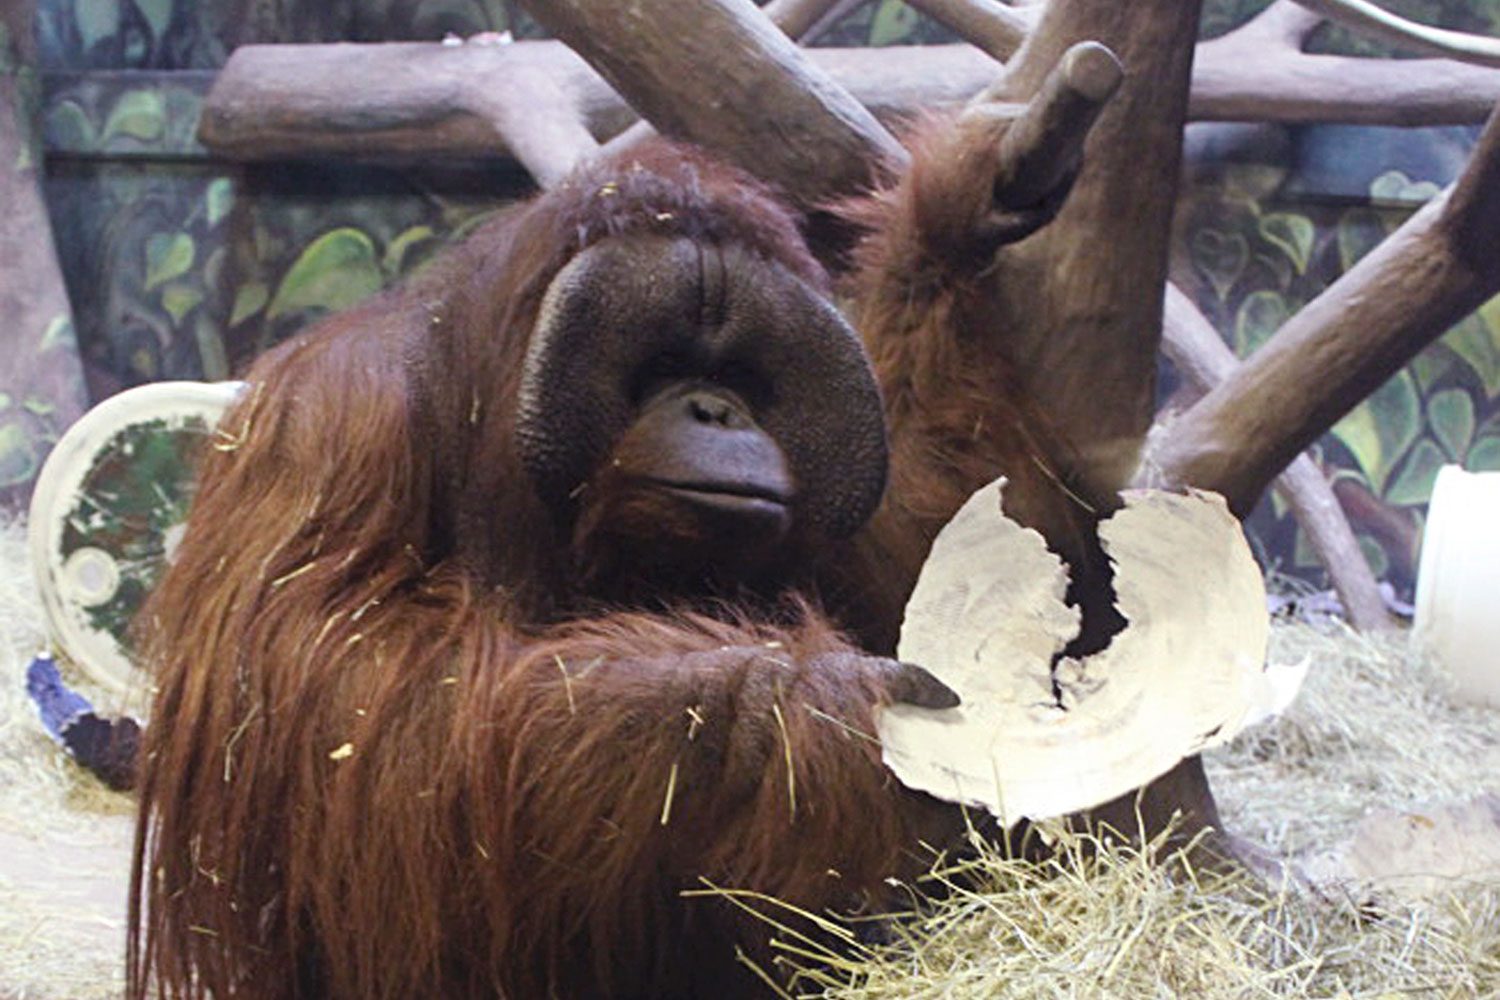 Según Elli, un orangután con dotes de adivino, los Seahawks de Seattle ganarán la Super Bowl